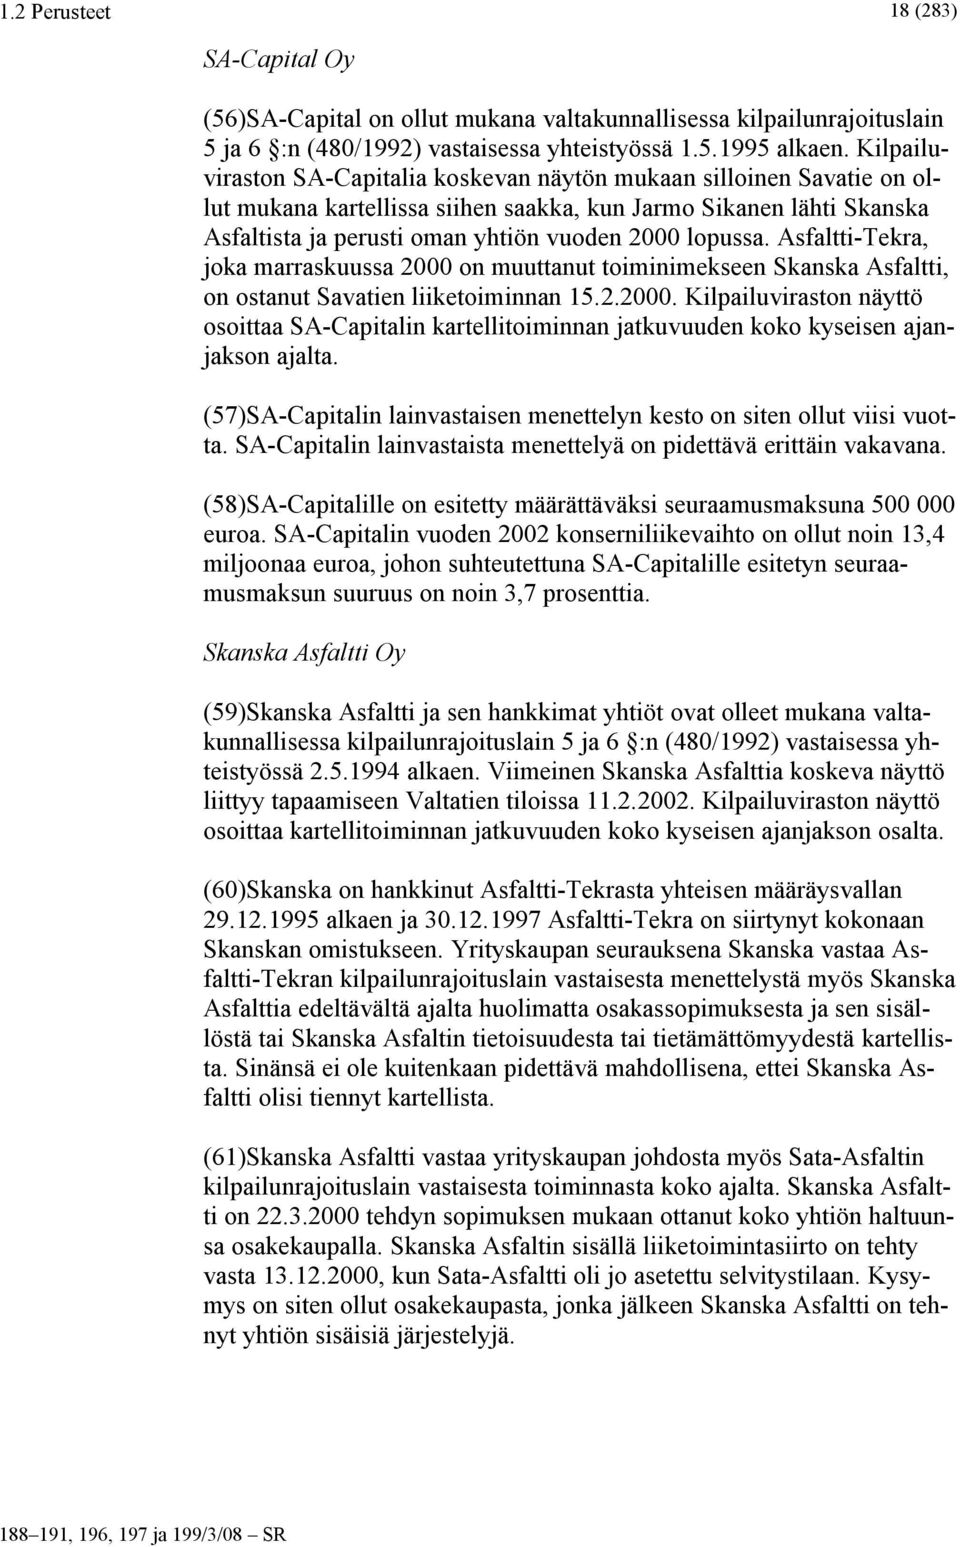 Asfaltti-Tekra, joka marraskuussa 2000 on muuttanut toiminimekseen Skanska Asfaltti, on ostanut Savatien liiketoiminnan 15.2.2000. Kilpailuviraston näyttö osoittaa SA-Capitalin kartellitoiminnan jatkuvuuden koko kyseisen ajanjakson ajalta.